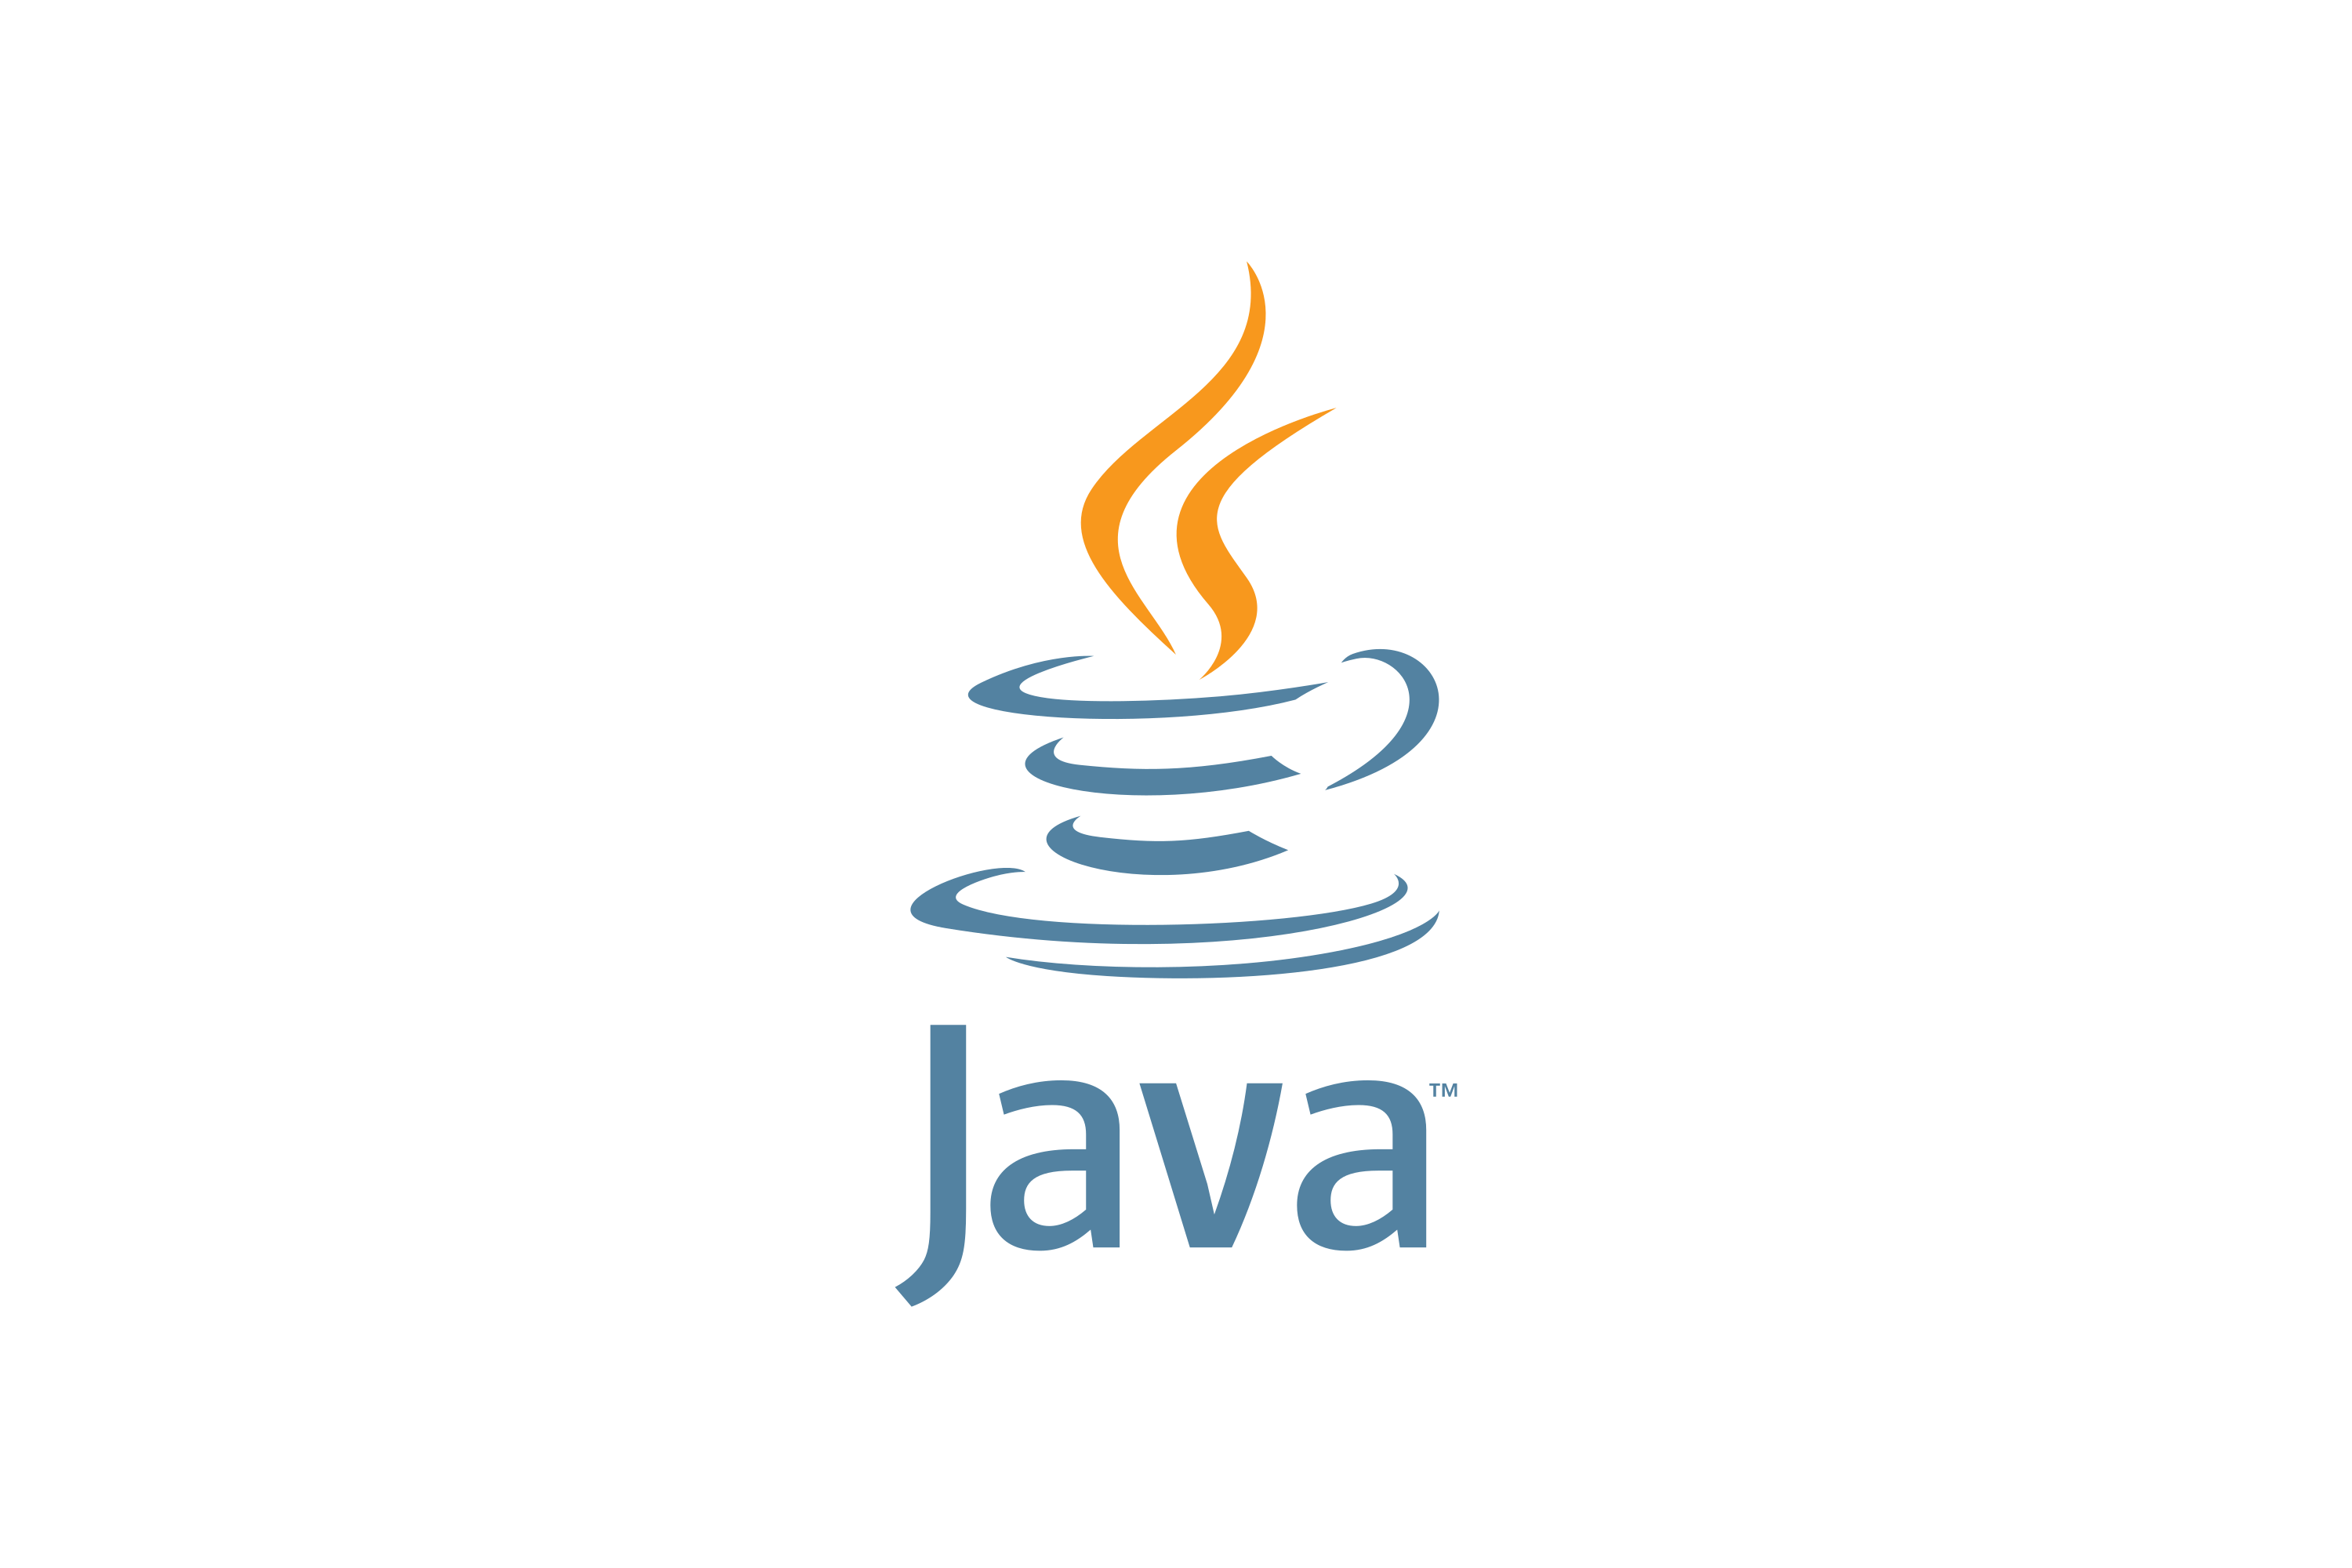 Jvaязык программирования логотип. Иконка java. Java логотип. Джава язык программирования логотип. Java javac